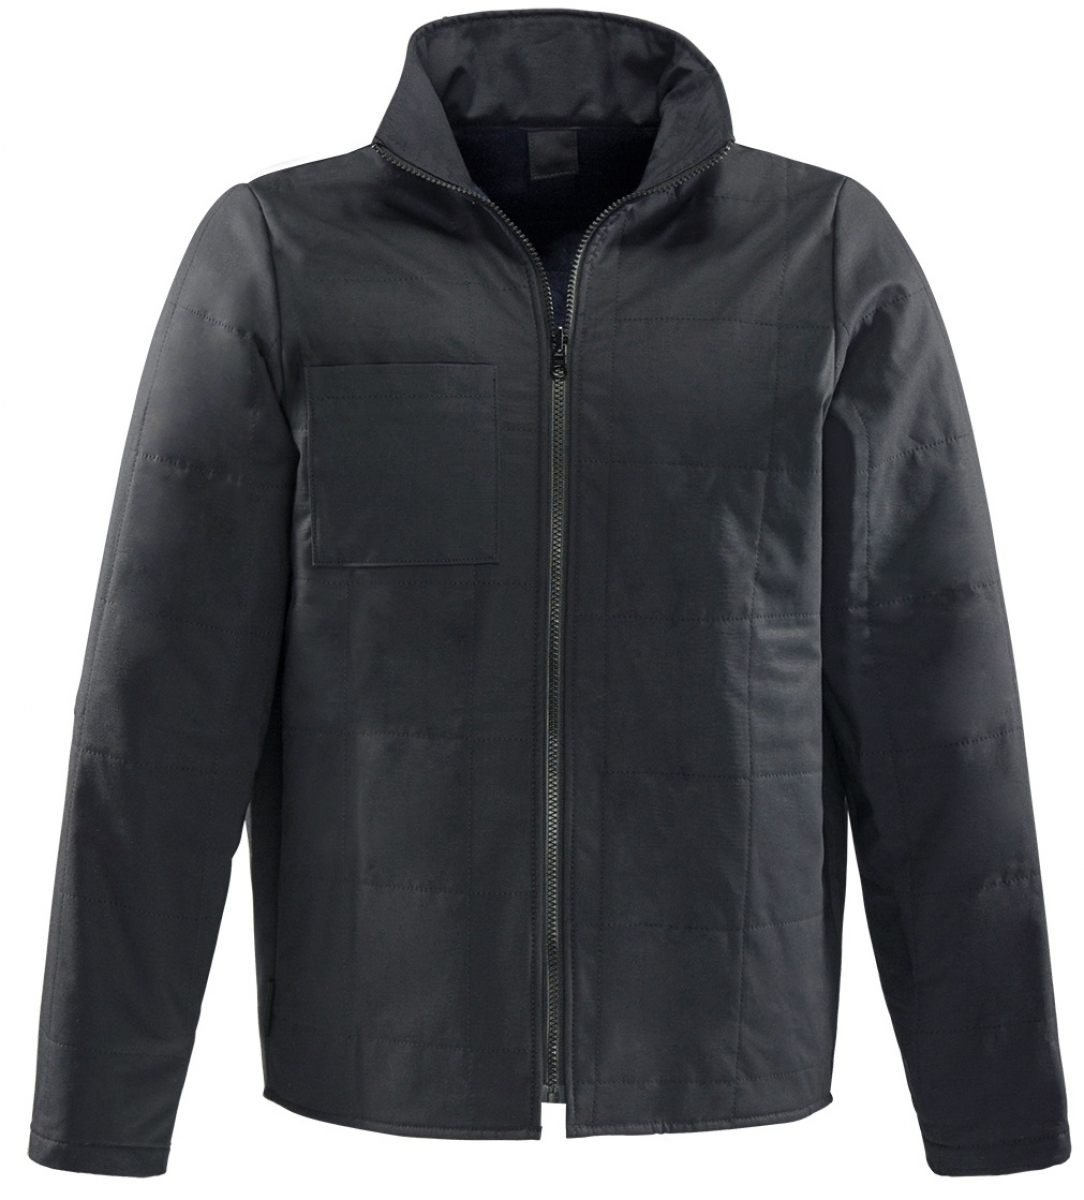 ROFA-Workwear, Innenjacke aus Steppfutter, Multinine Multinormenwetterschutz, ca. 350 g/m, schwarz